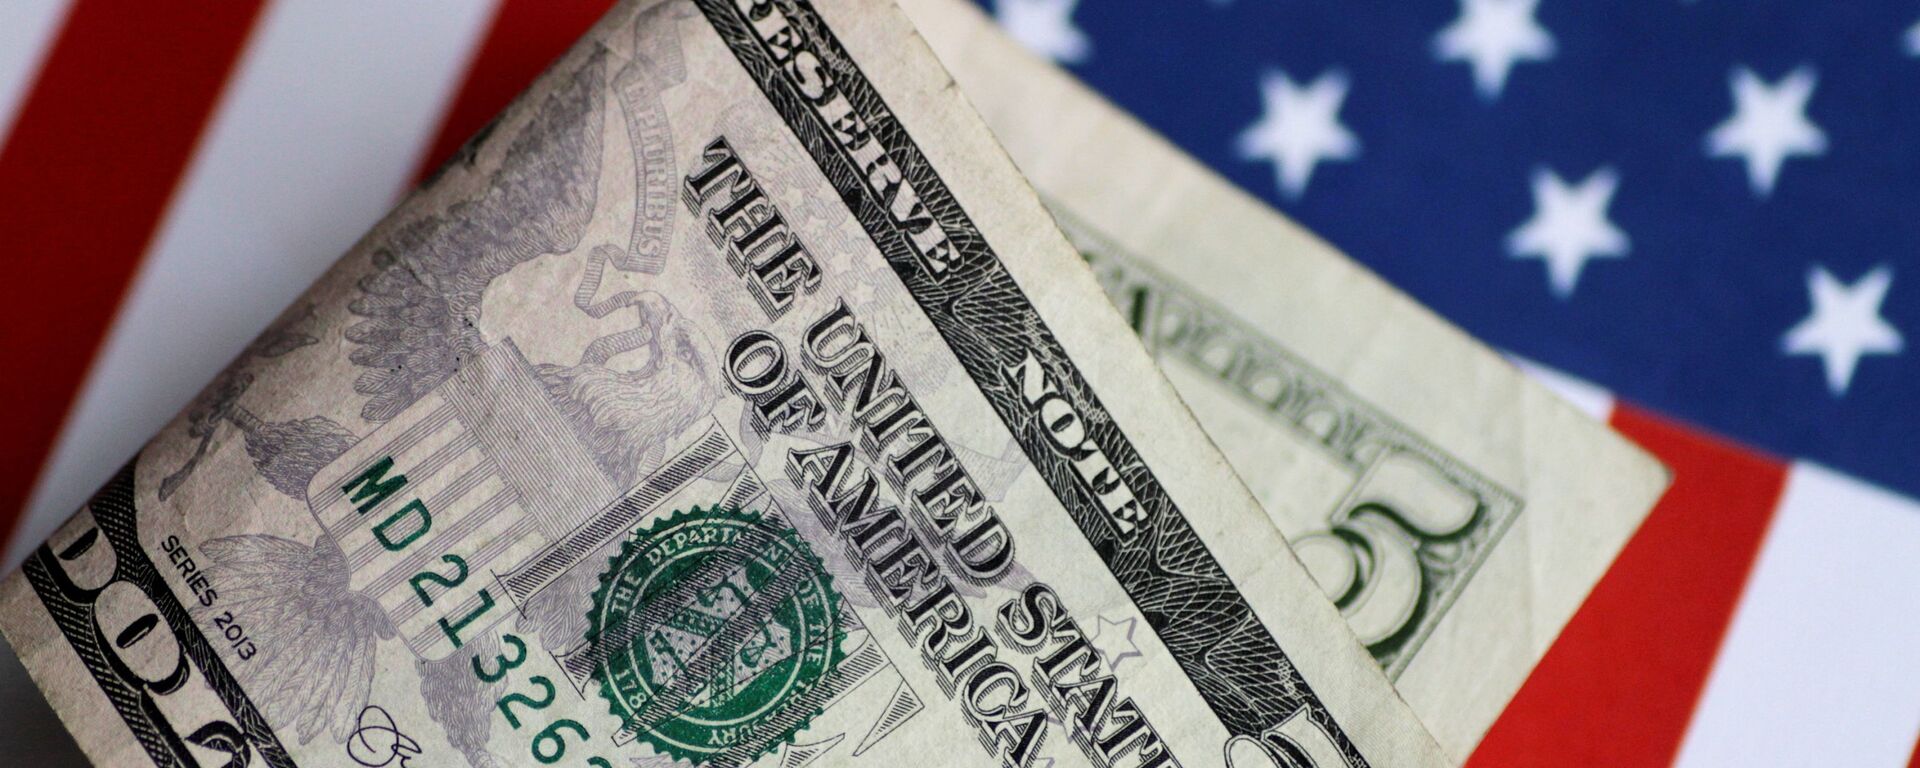 Nota de dólar na bandeira americana (imagem referencial) - Sputnik Brasil, 1920, 04.09.2021